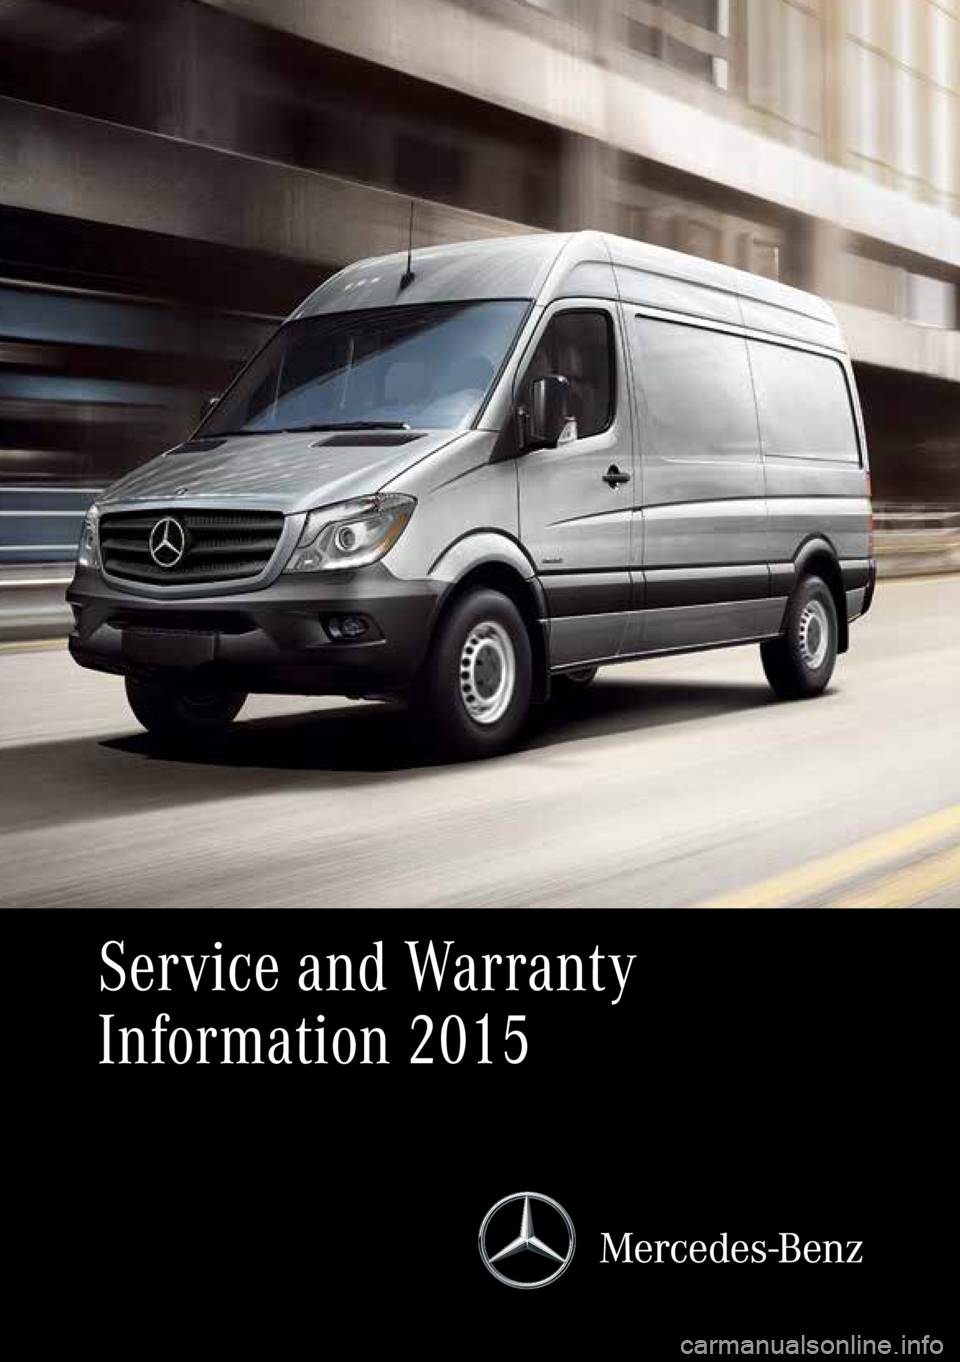 MERCEDES-BENZ SPRINTER 2015  MY15 Service and Warranty Information 